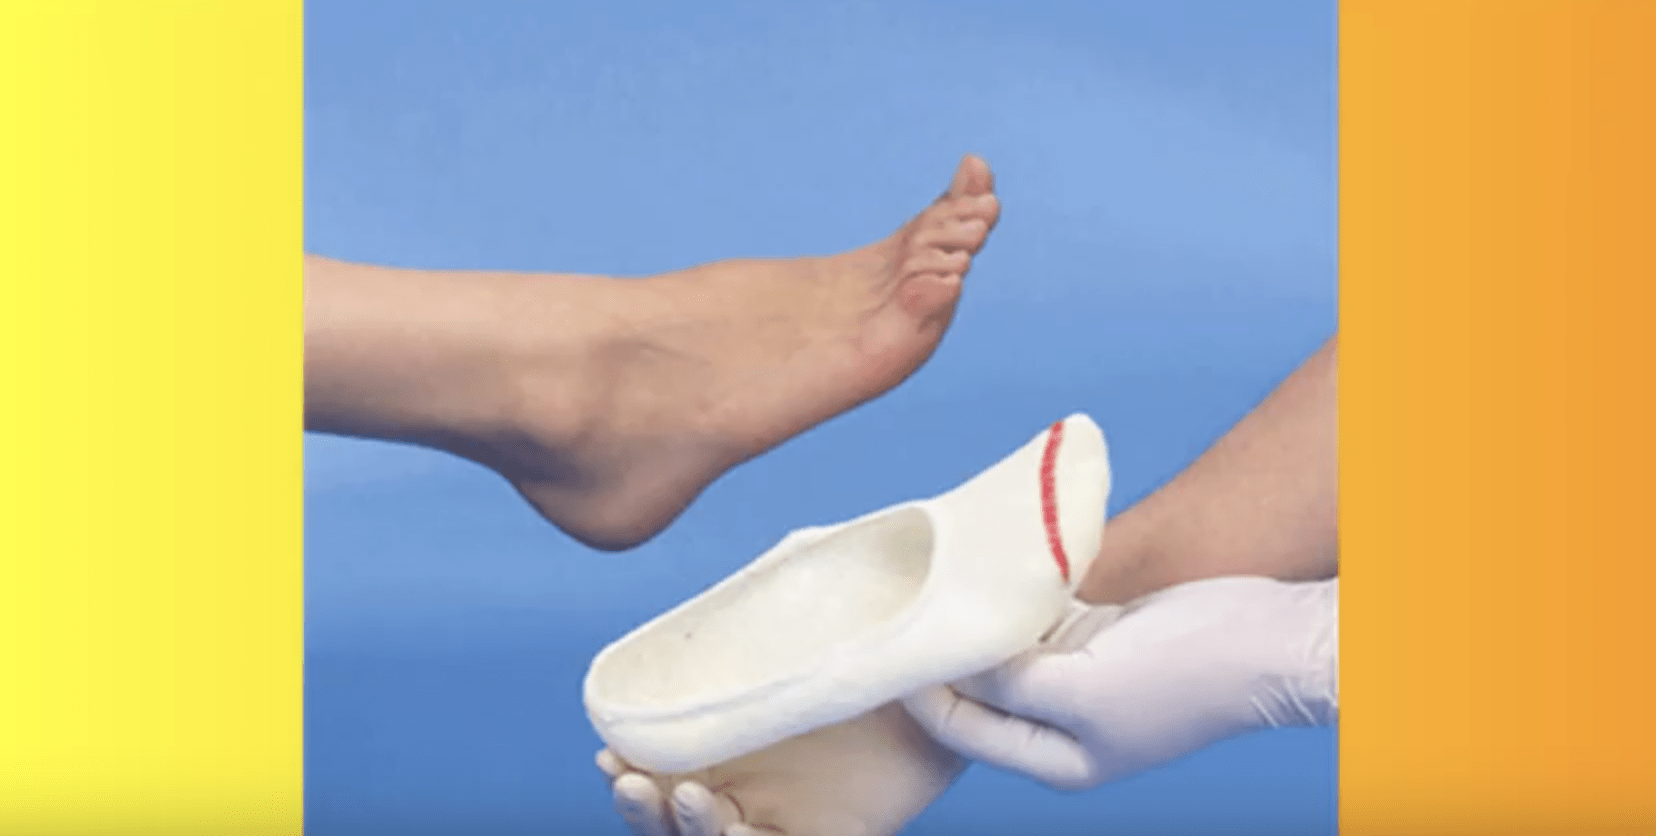 custom foot orthotics